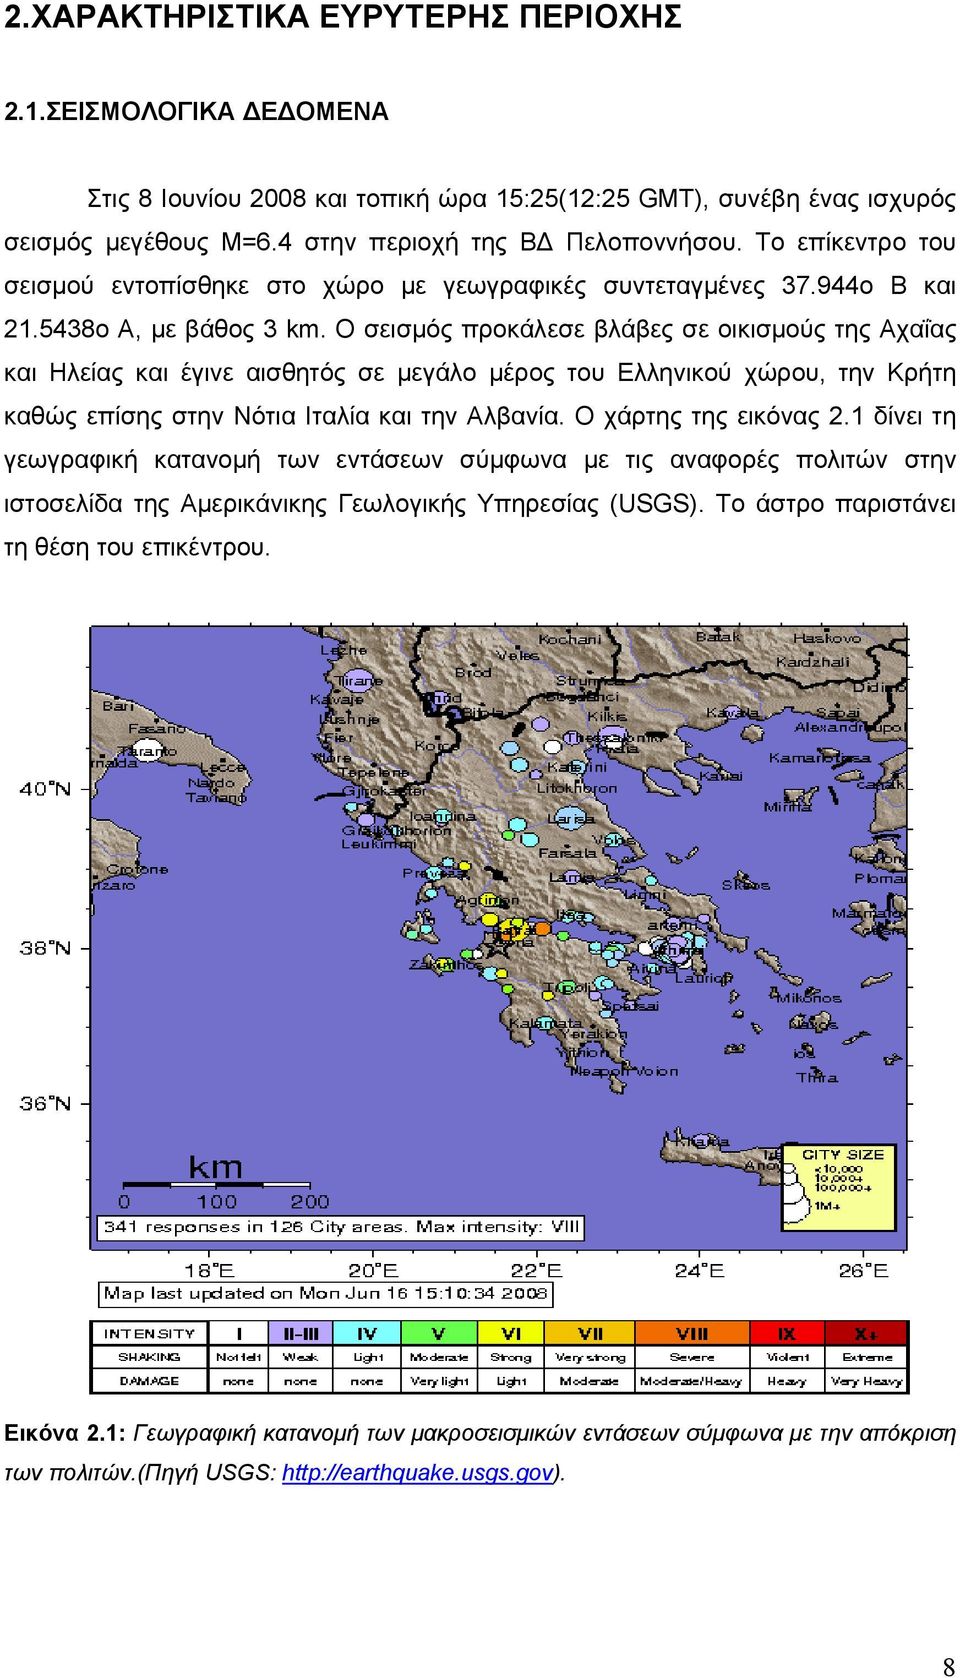 Ο σεισμός προκάλεσε βλάβες σε οικισμούς της Αχαΐας και Ηλείας και έγινε αισθητός σε μεγάλο μέρος του Ελληνικού χώρου, την Κρήτη καθώς επίσης στην Νότια Ιταλία και την Αλβανία. Ο χάρτης της εικόνας 2.